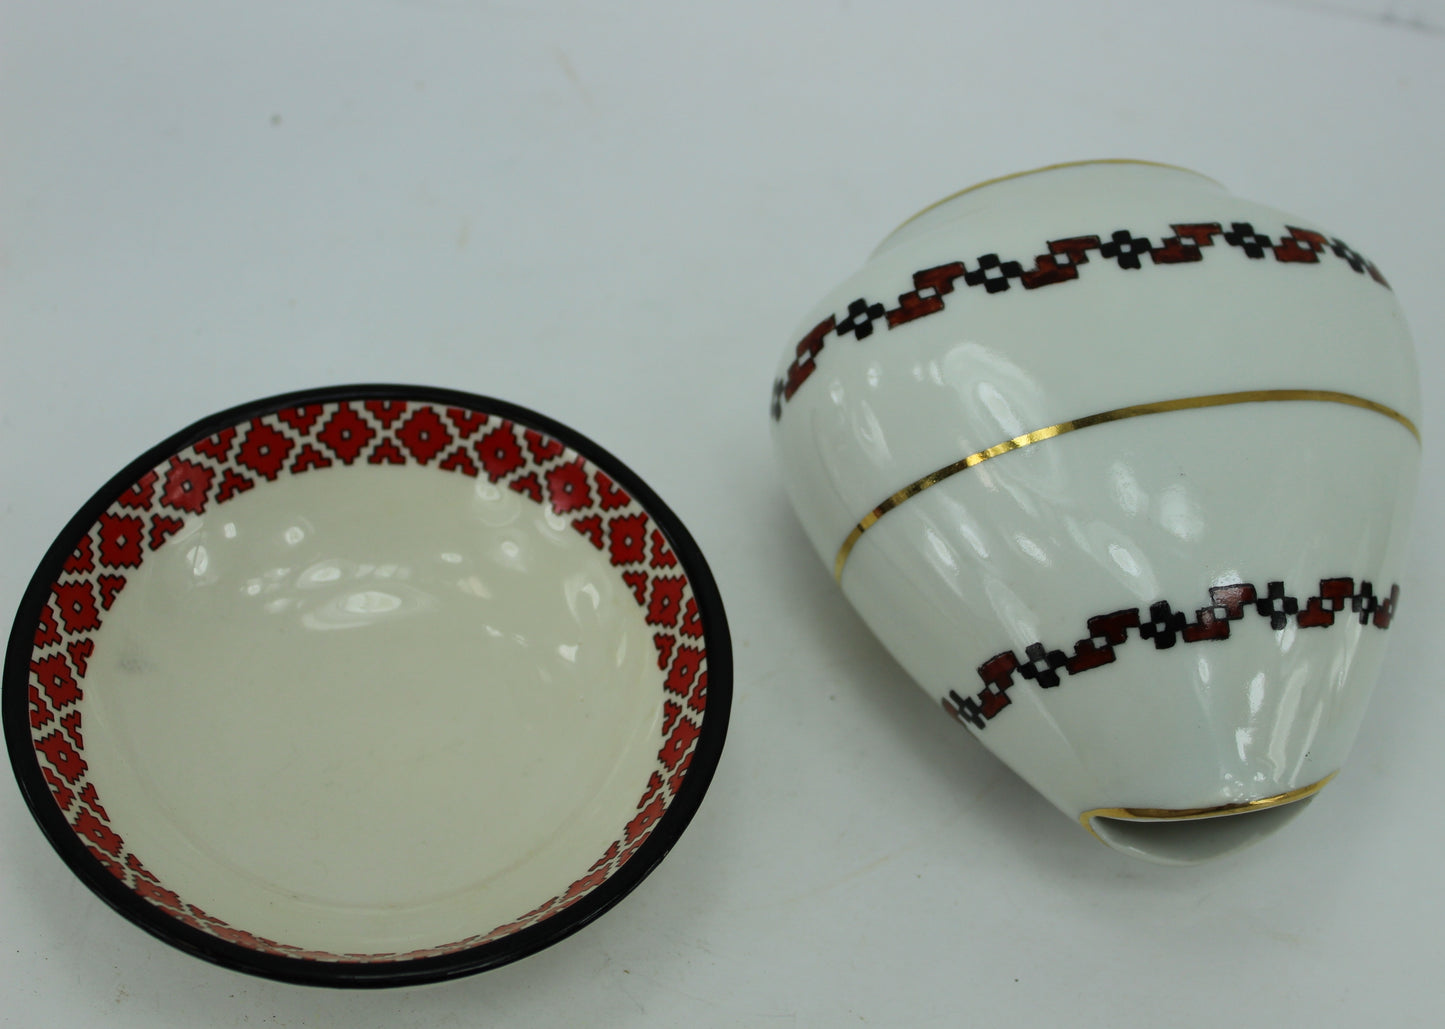 Traditional Pottery Bowl & Porcelain Unusual Porcelain Vase Brazil Estate Opera Singer  conical shape vase